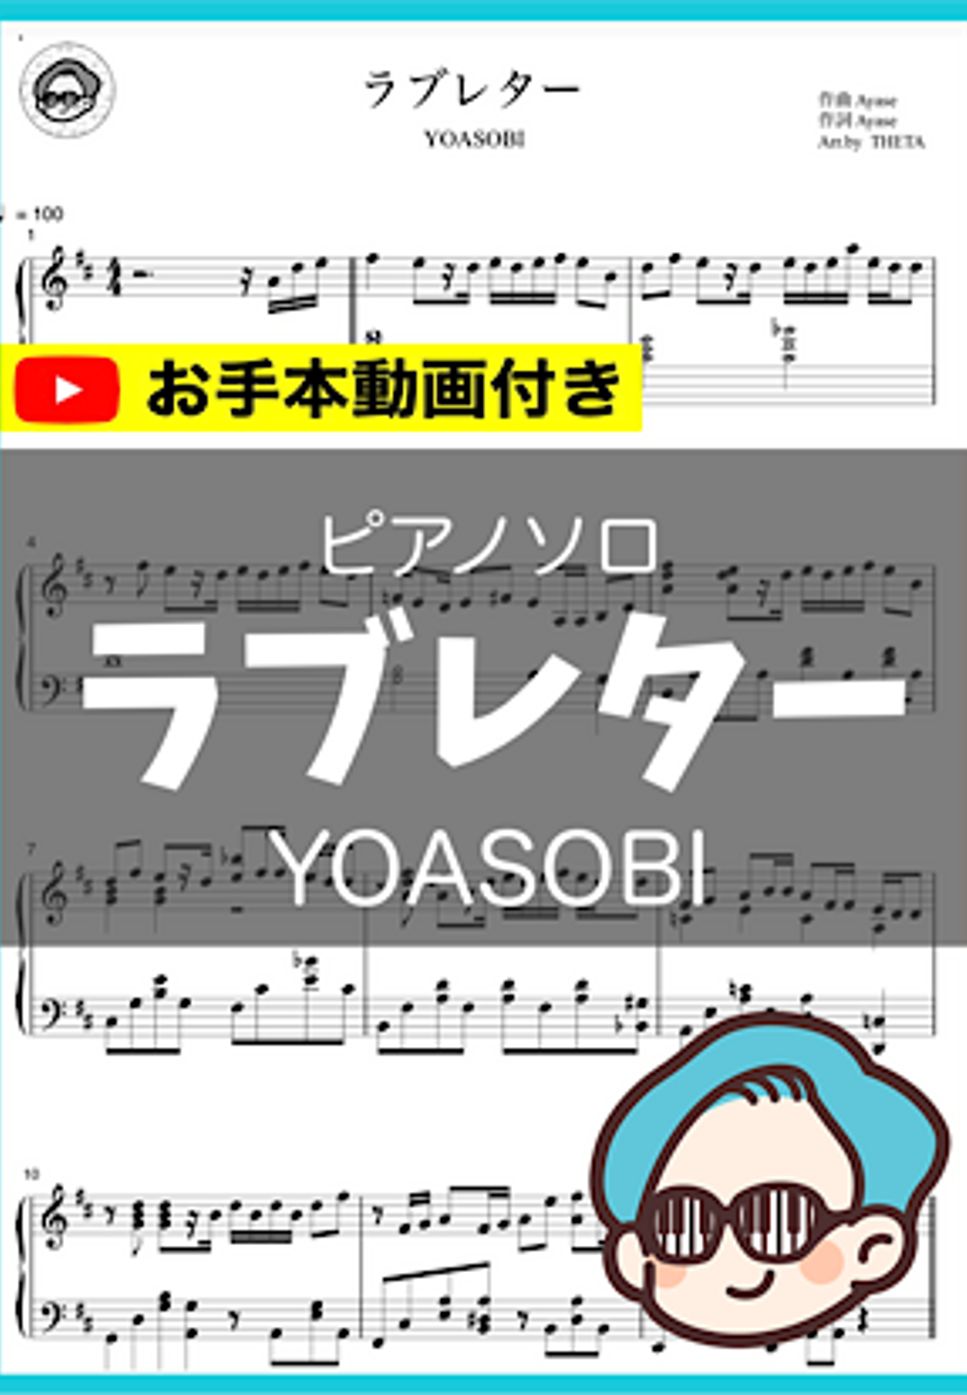 YOASOBI - ラブレター by シータピアノ